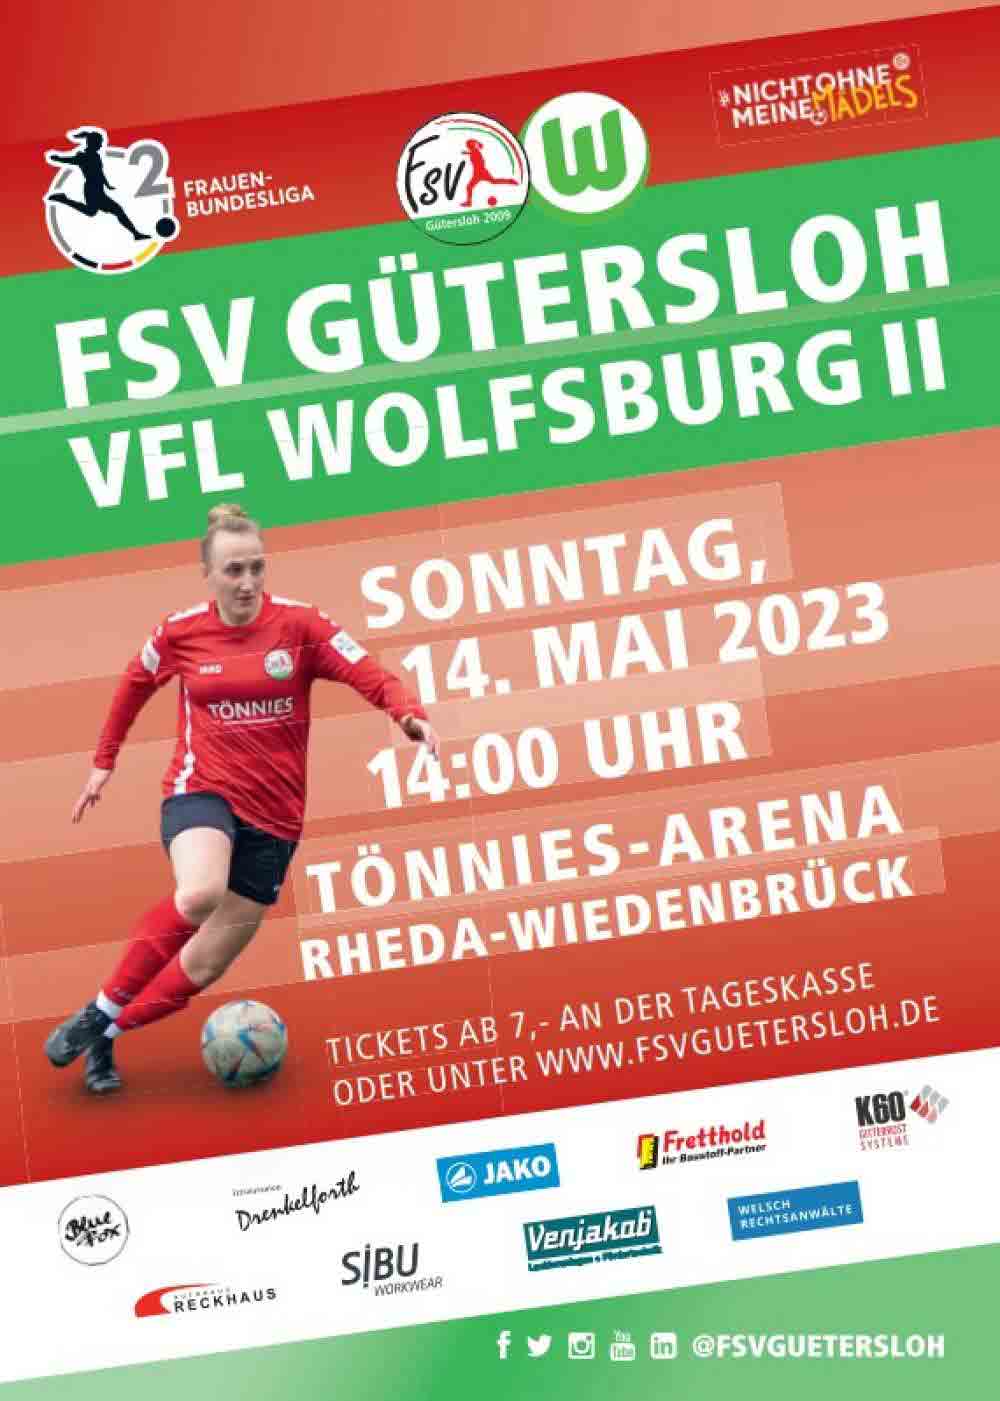 Fuißball in Gütersloh, 2. Frauen Bundesliga, FSV Gütersloh trifft auf den VFL Wolfsburg II